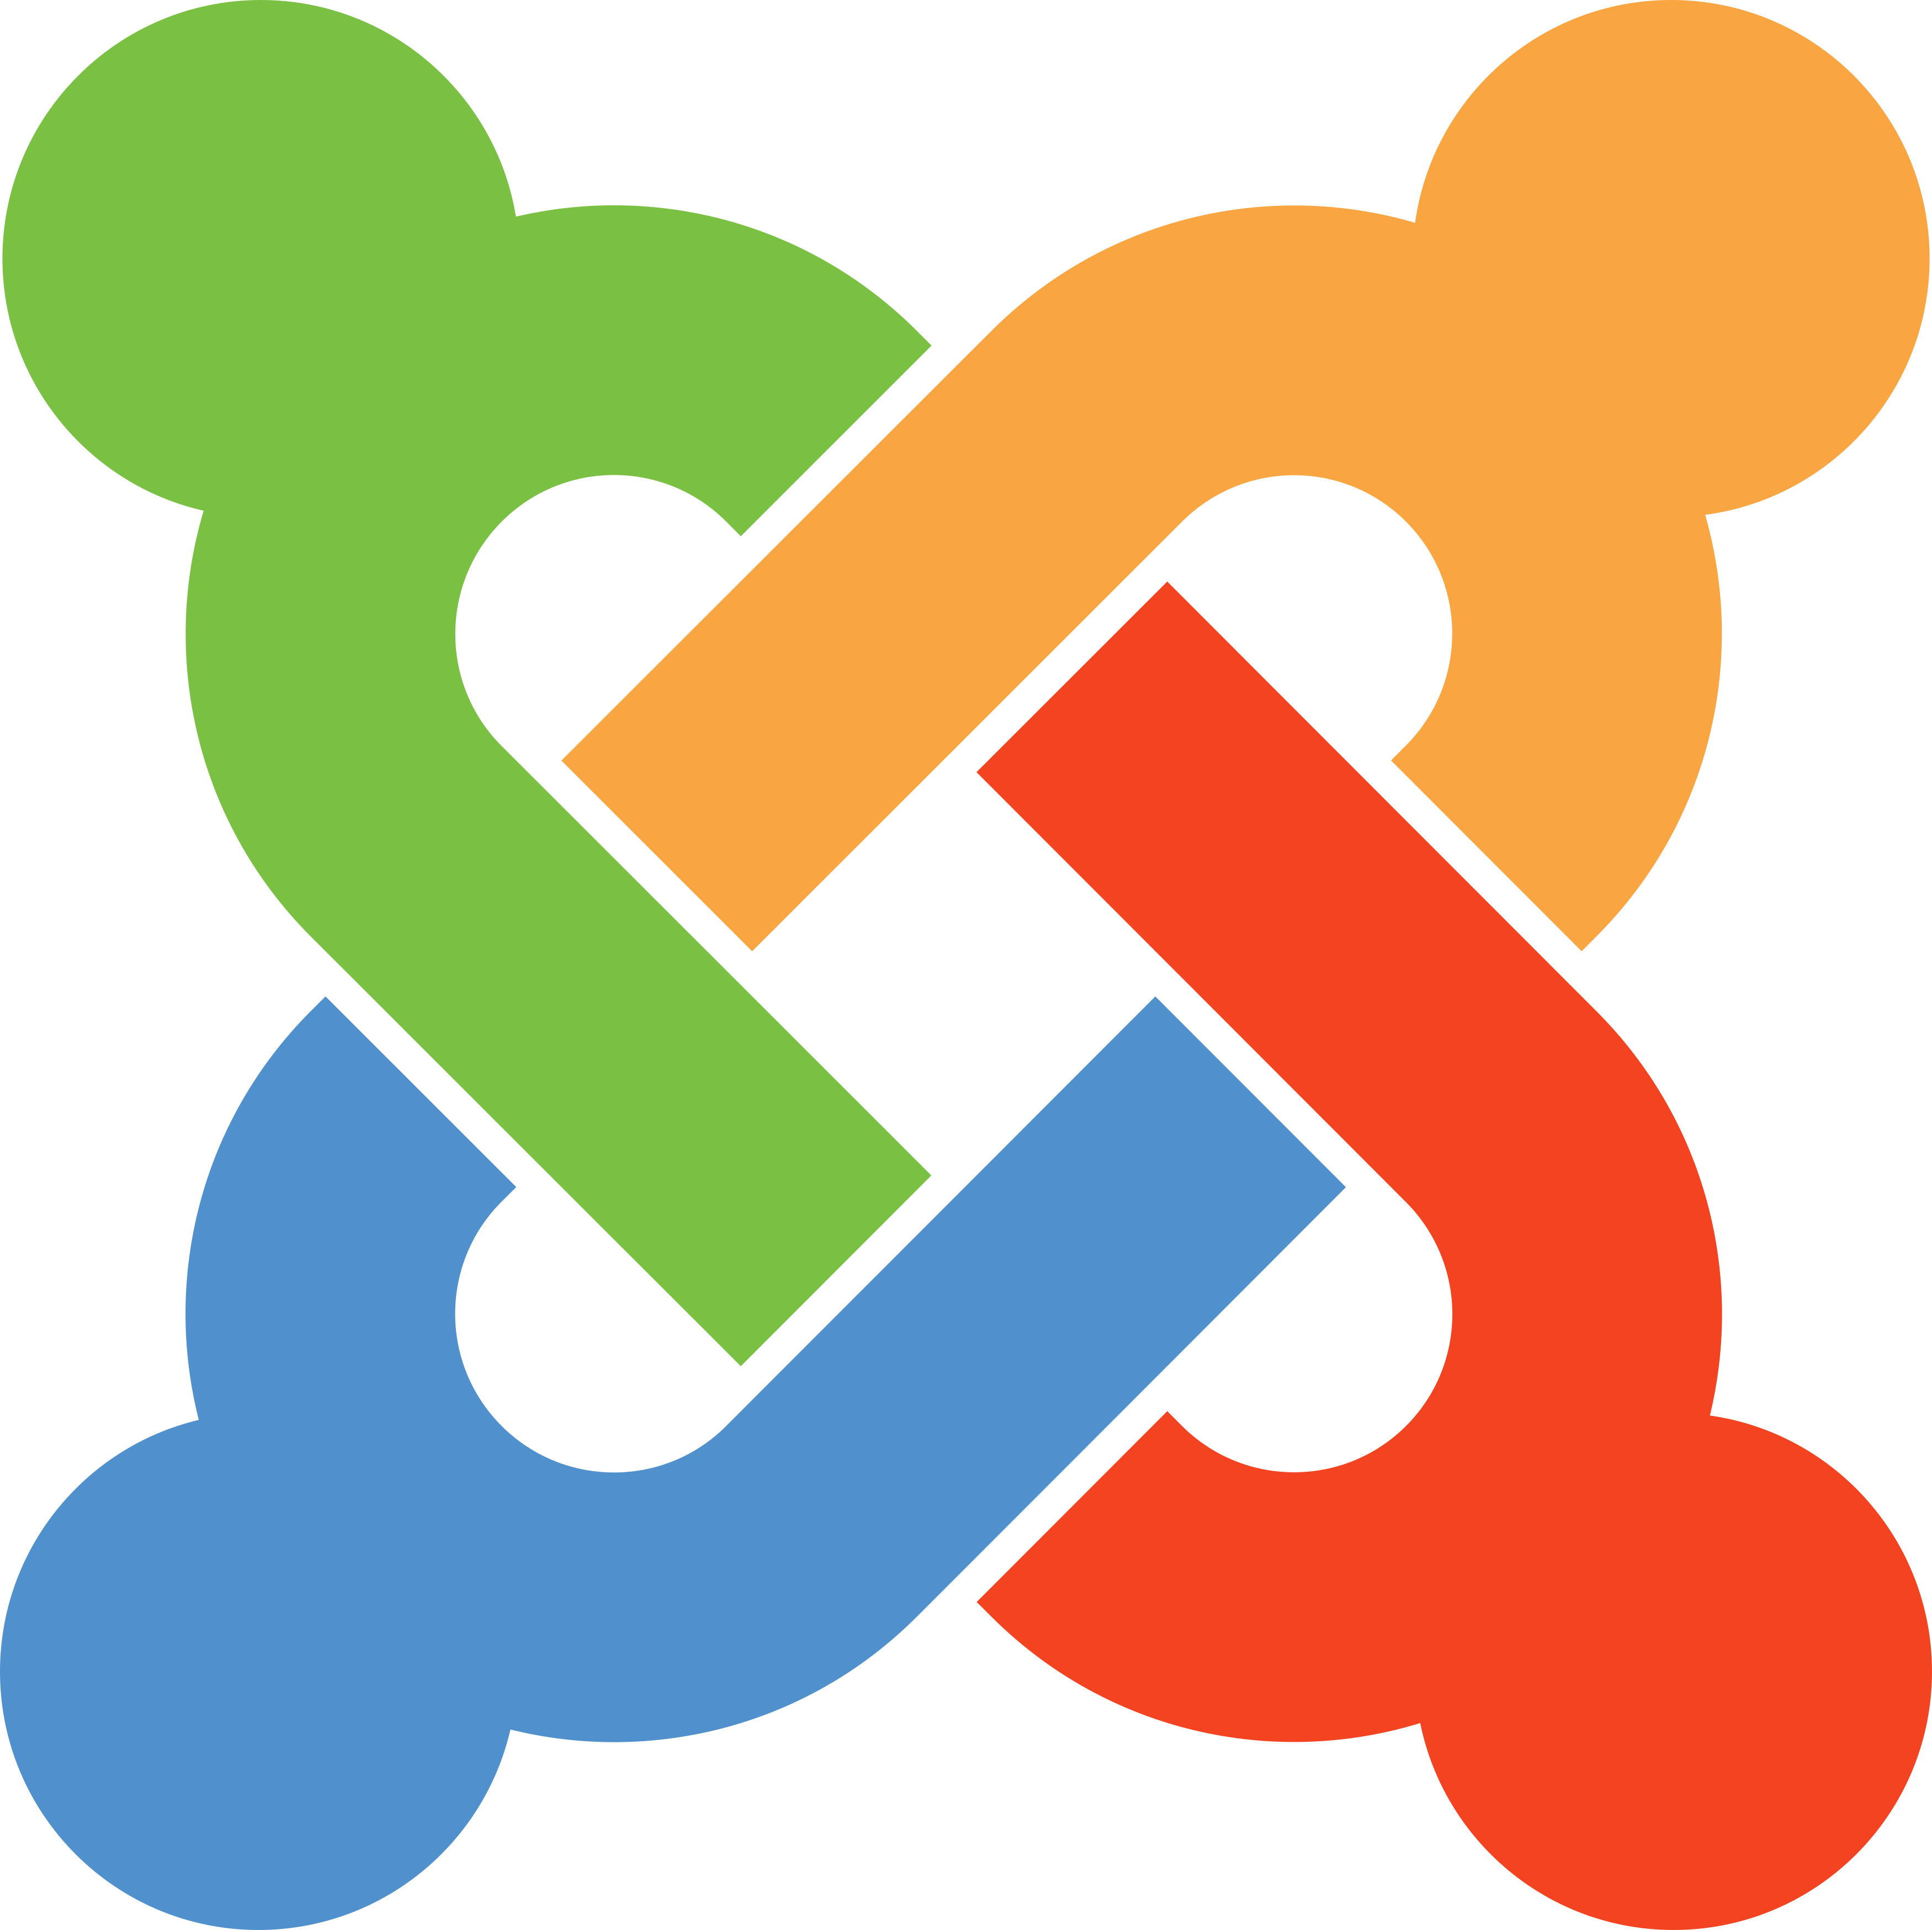 Joomla Logo.